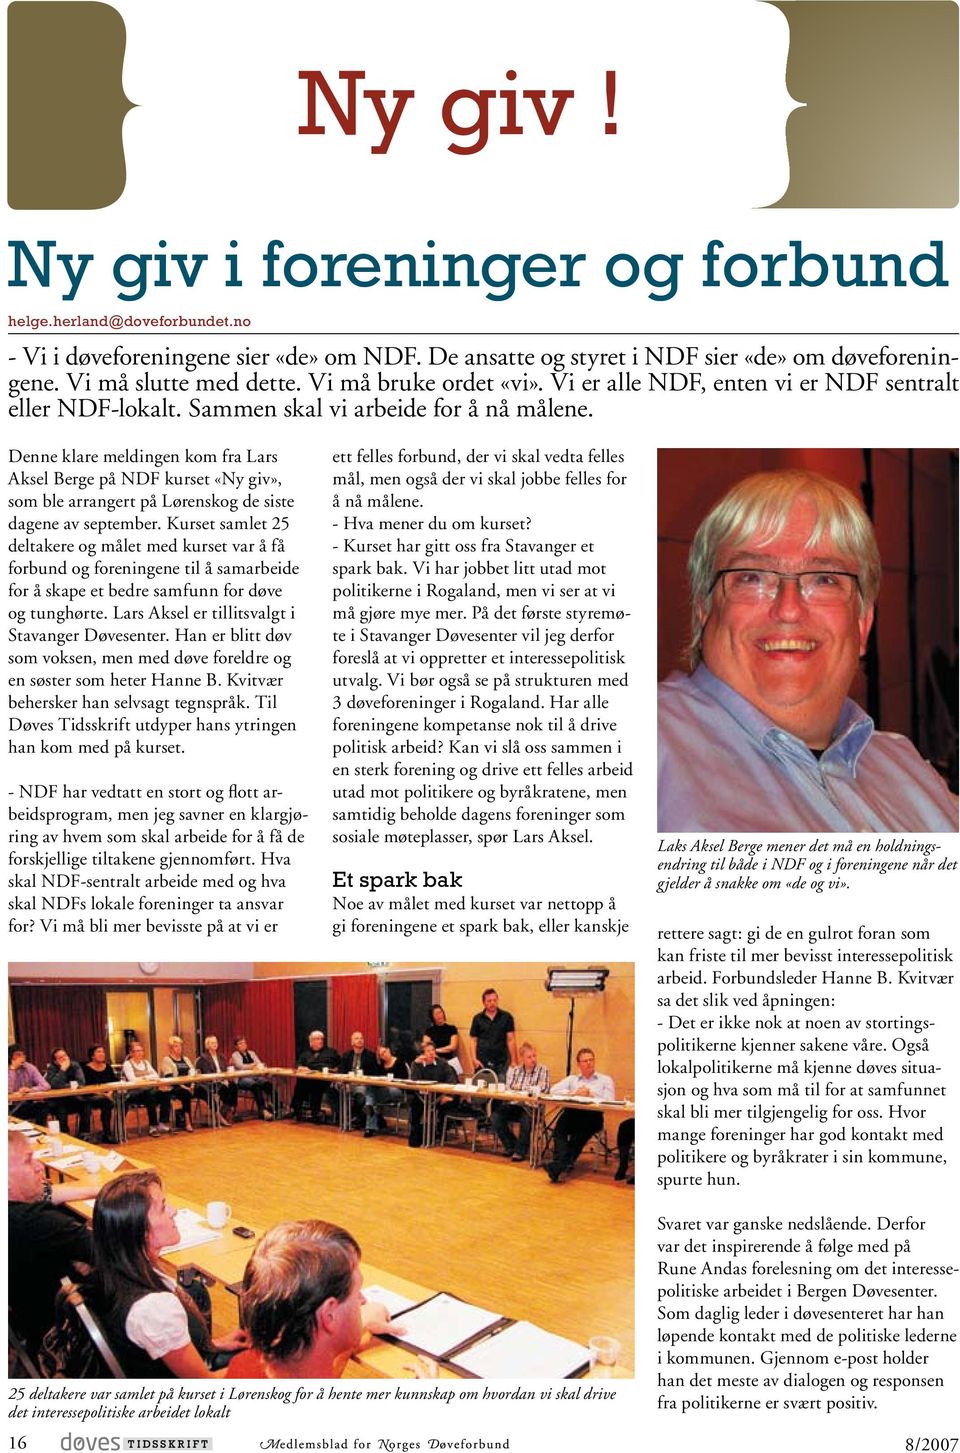 Denne klare meldingen kom fra Lars Aksel Berge på NDF kurset «Ny giv», som ble arrangert på Lørenskog de siste dagene av september.